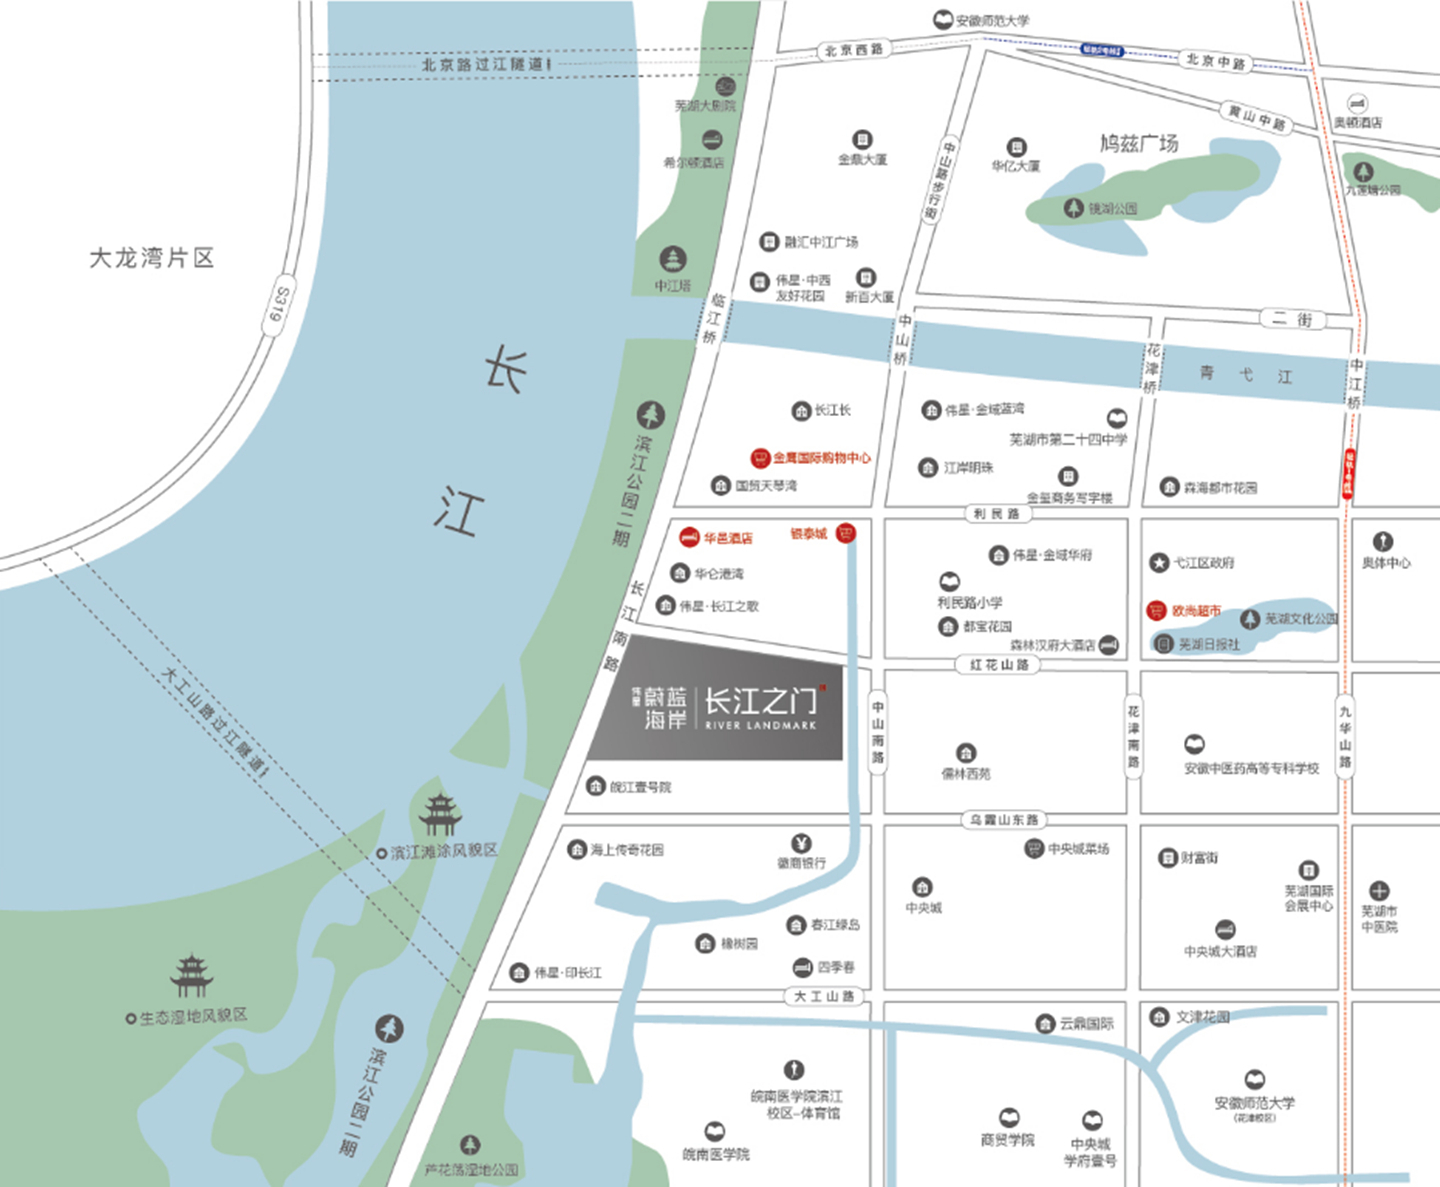 伟星蔚蓝海岸2期·长江之门交通图